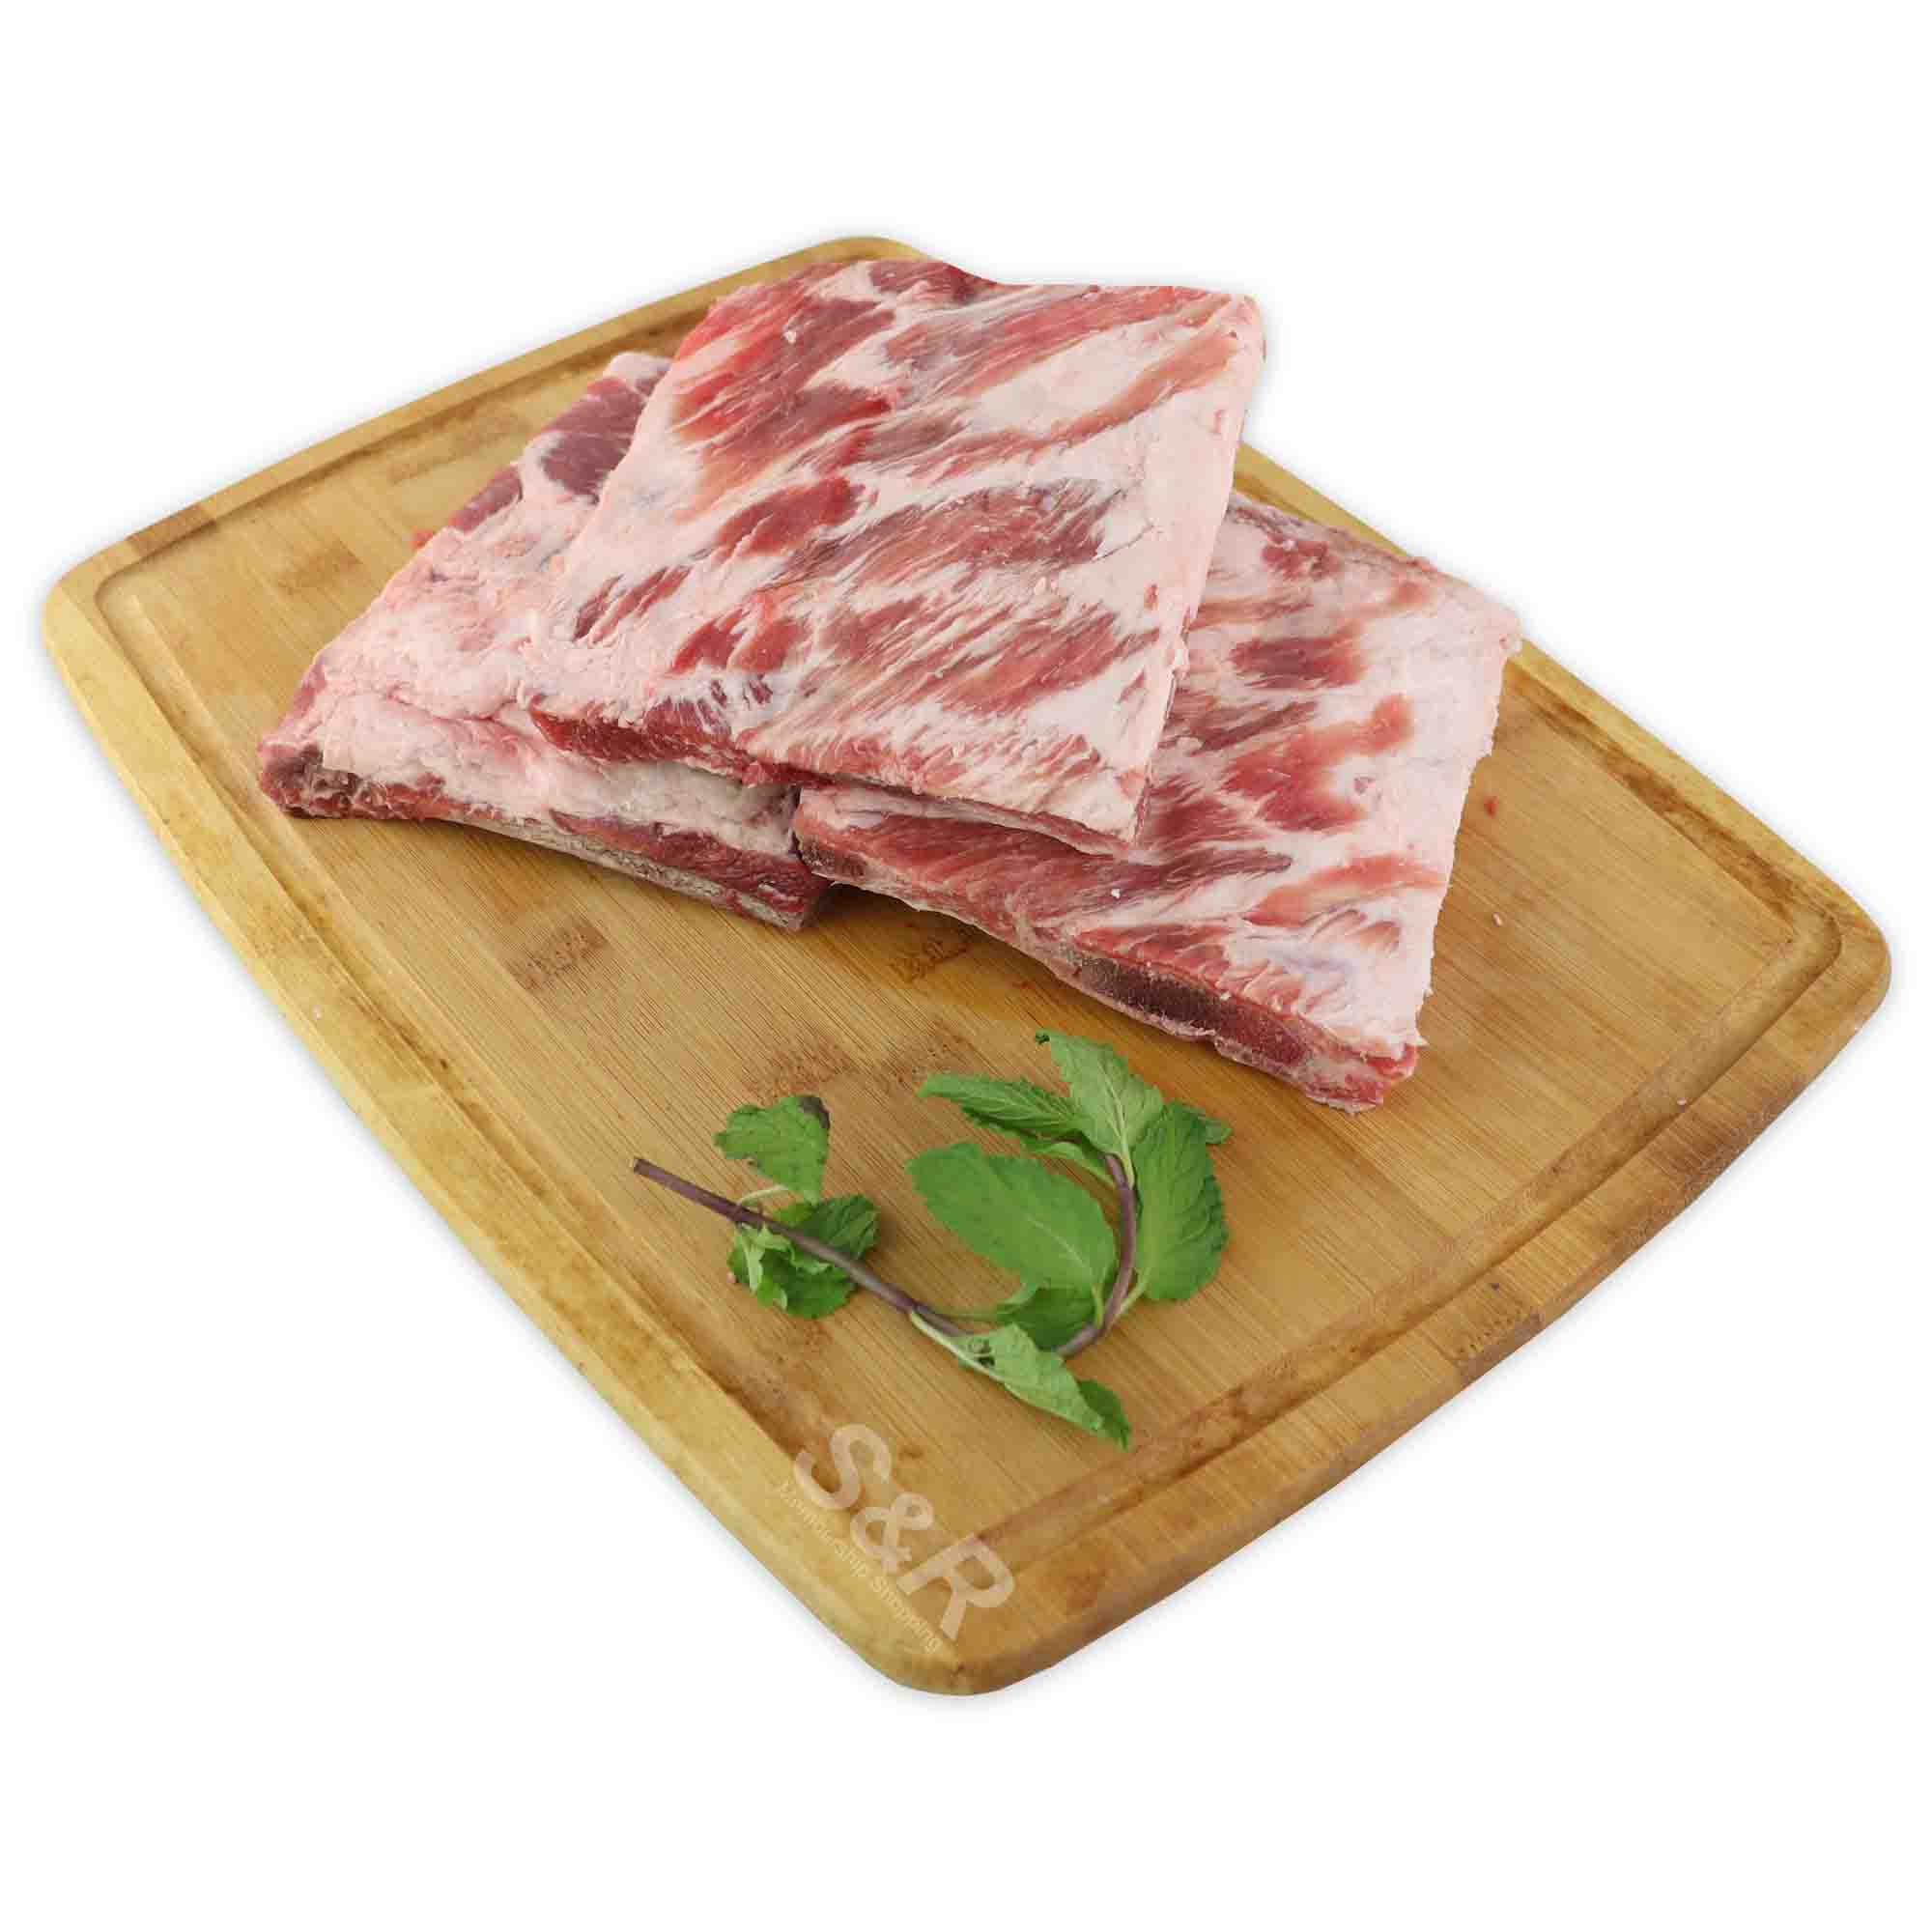 Members' Value Pork American Ribs approx. 1.7kg